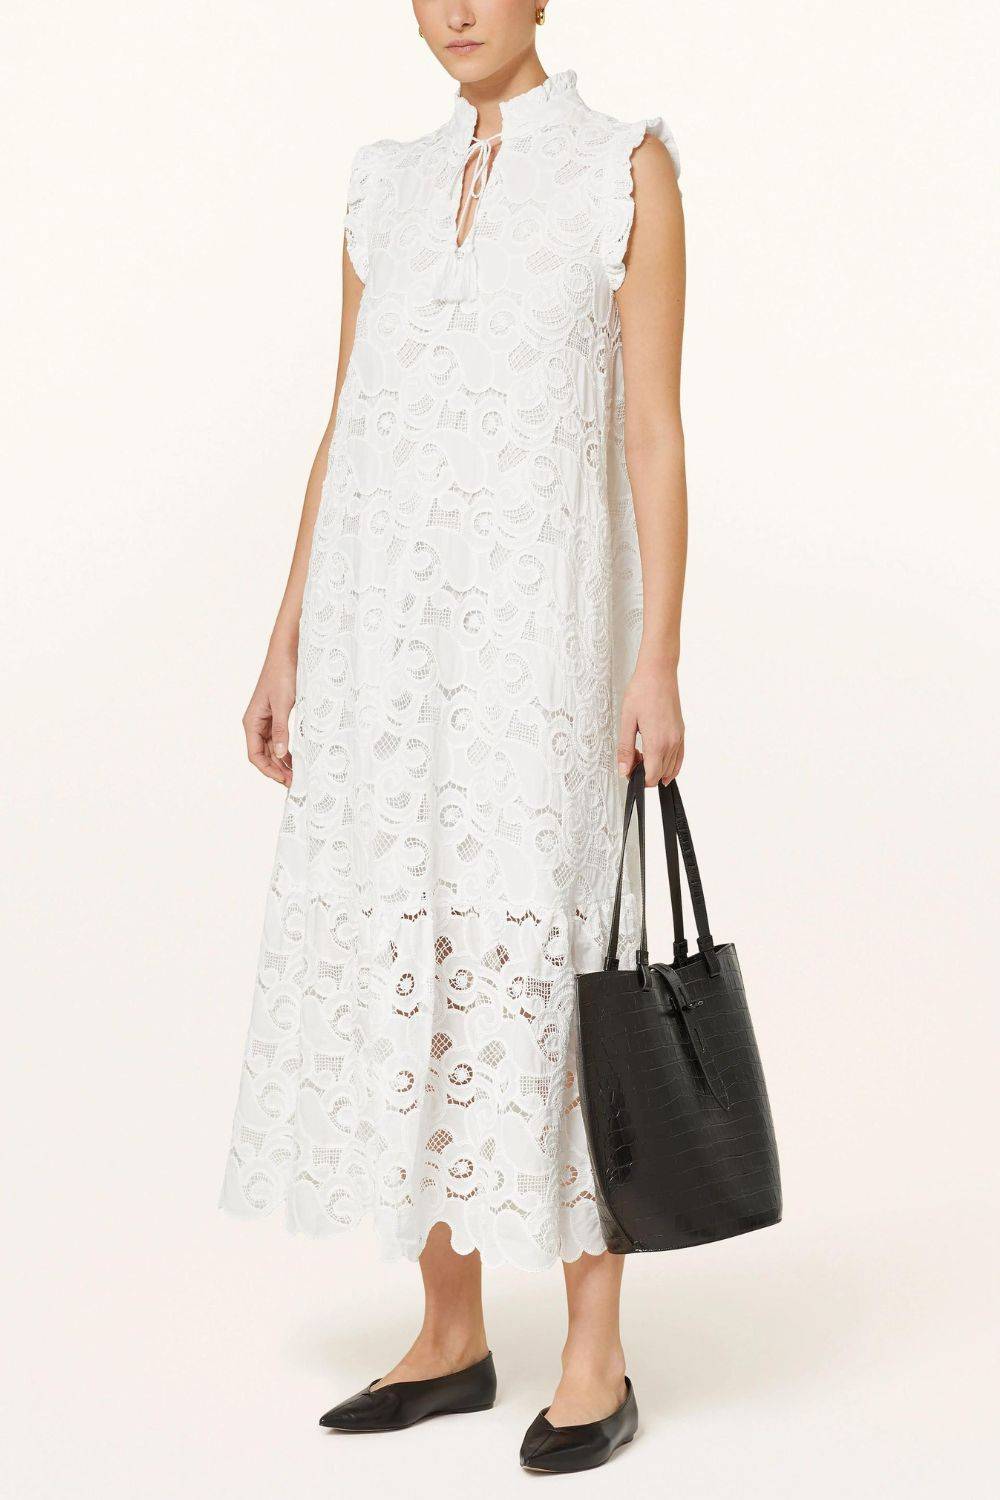 Biała sukienka koronkowa, Mrs & Hugs, 885 zł (Fot. materiały prasowe)